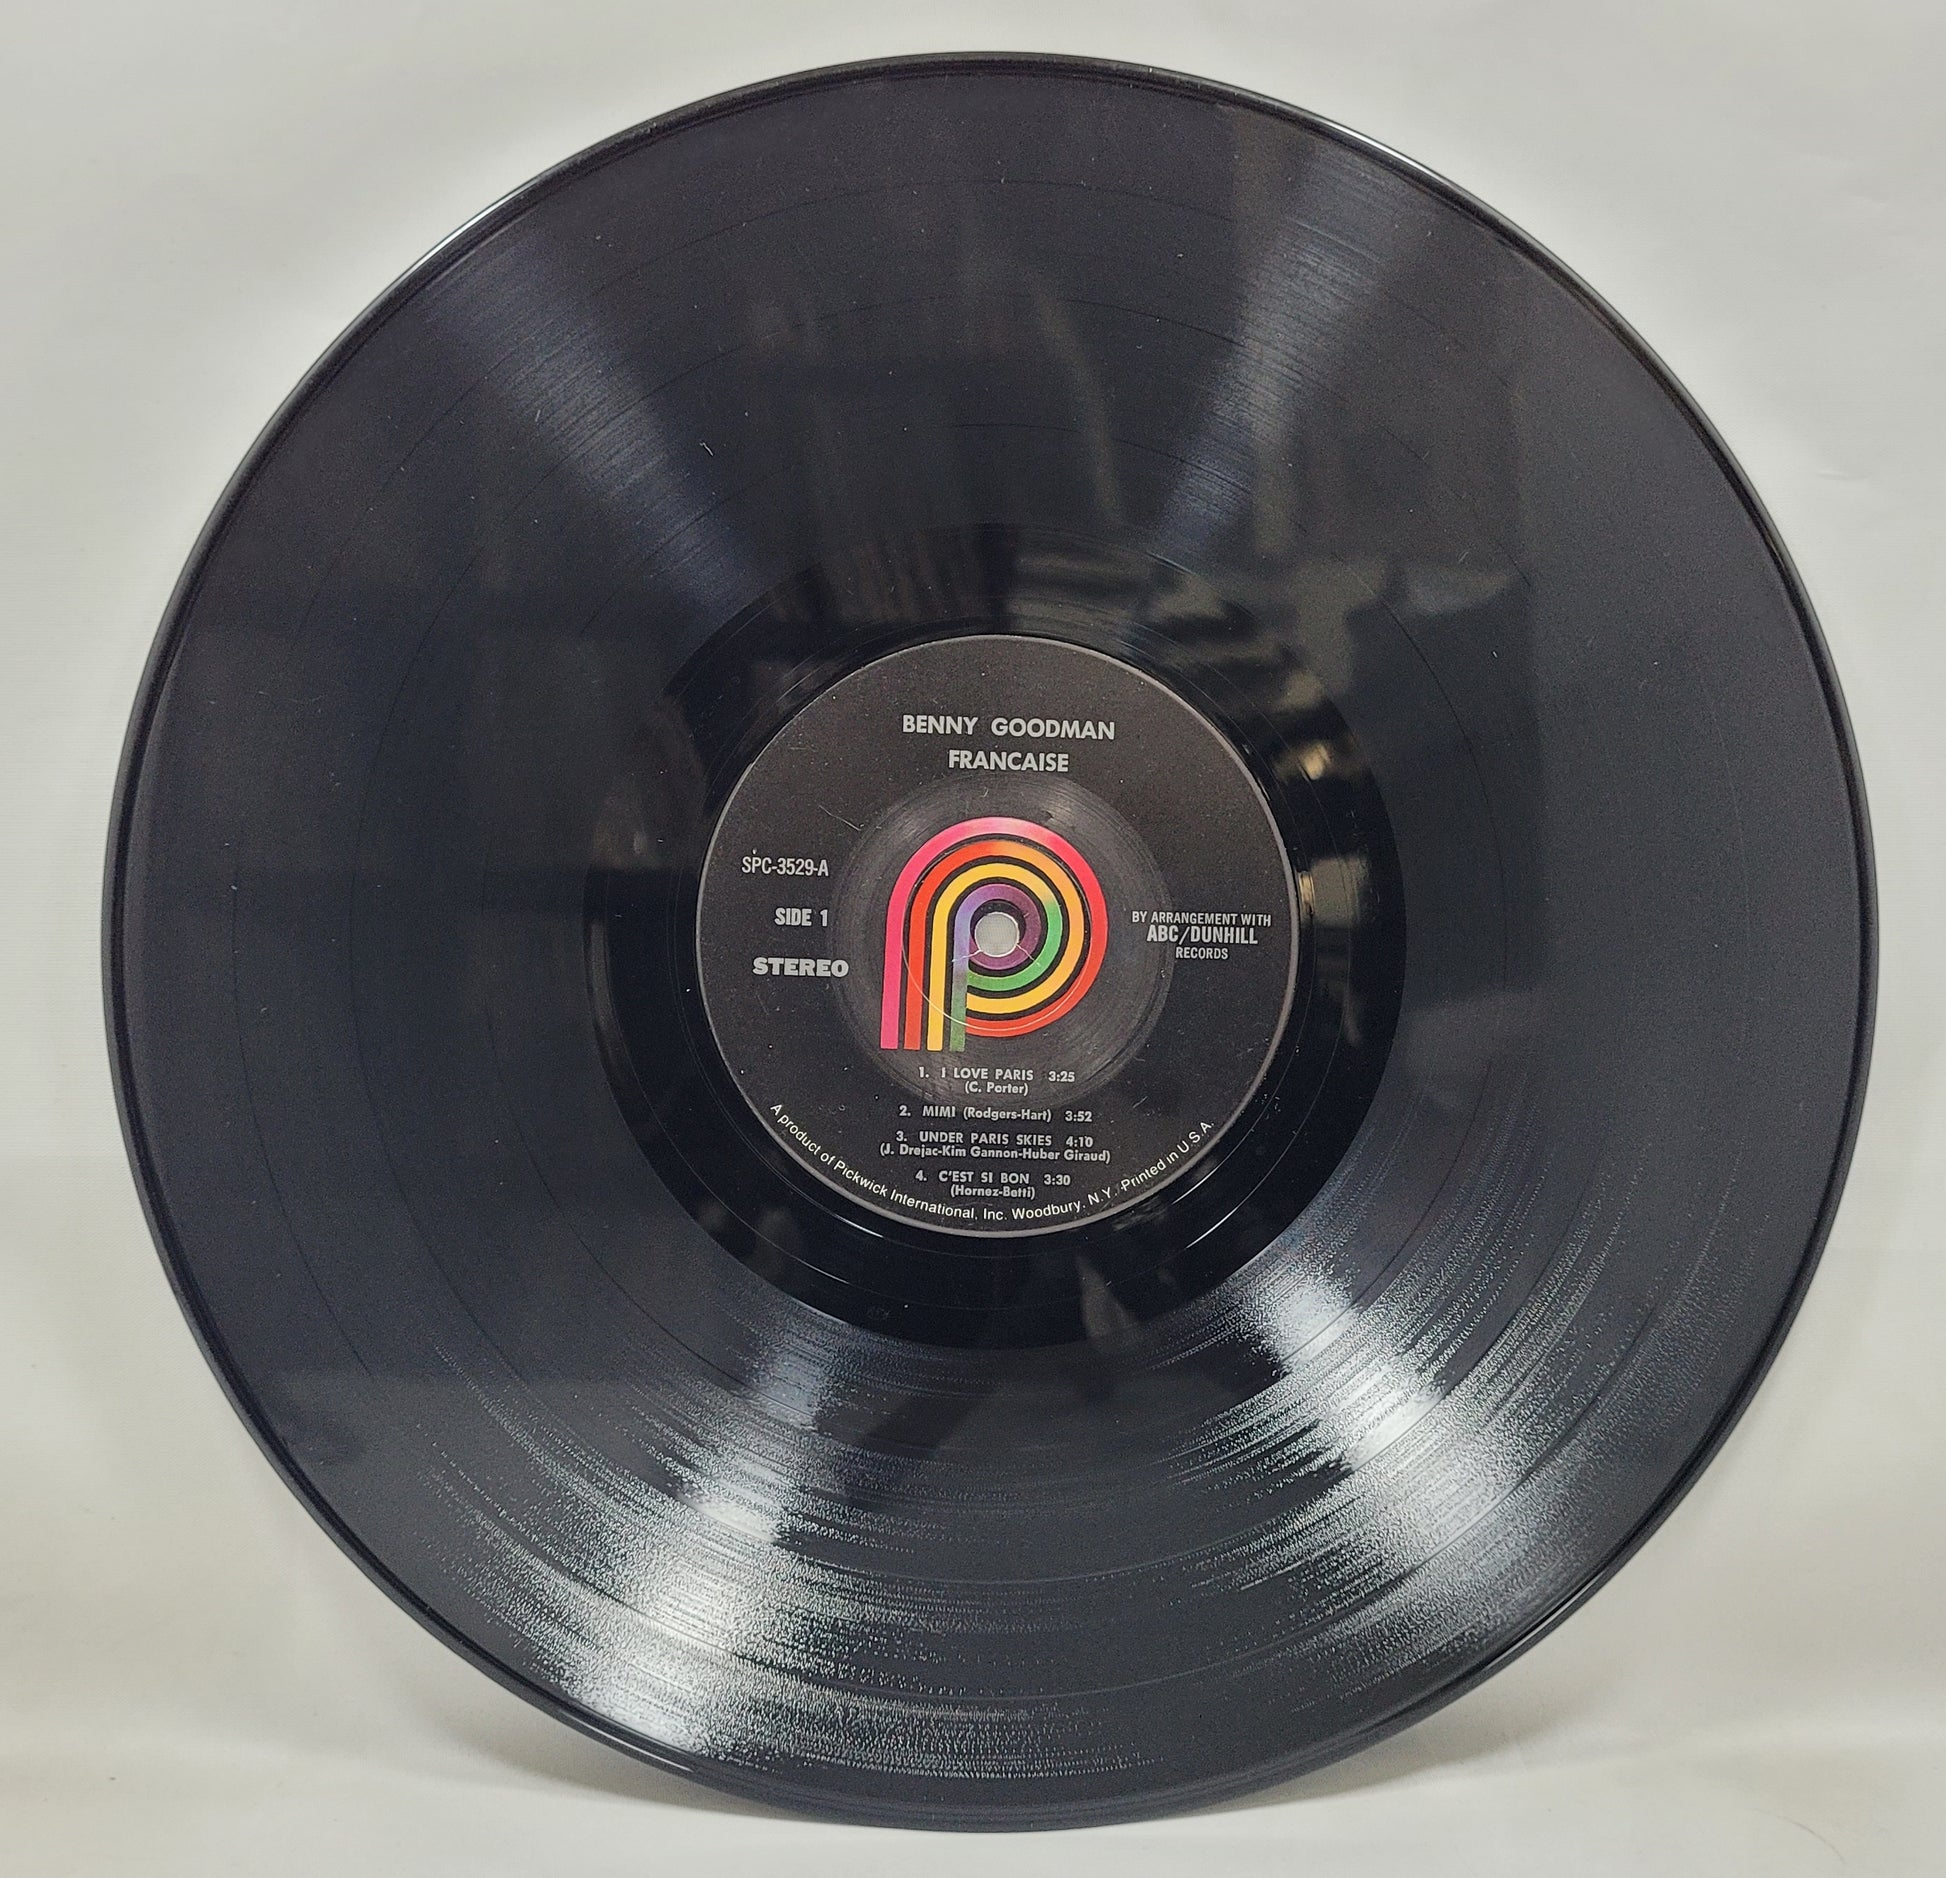 Benny Goodman - Francaise [Vinyl Record LP]